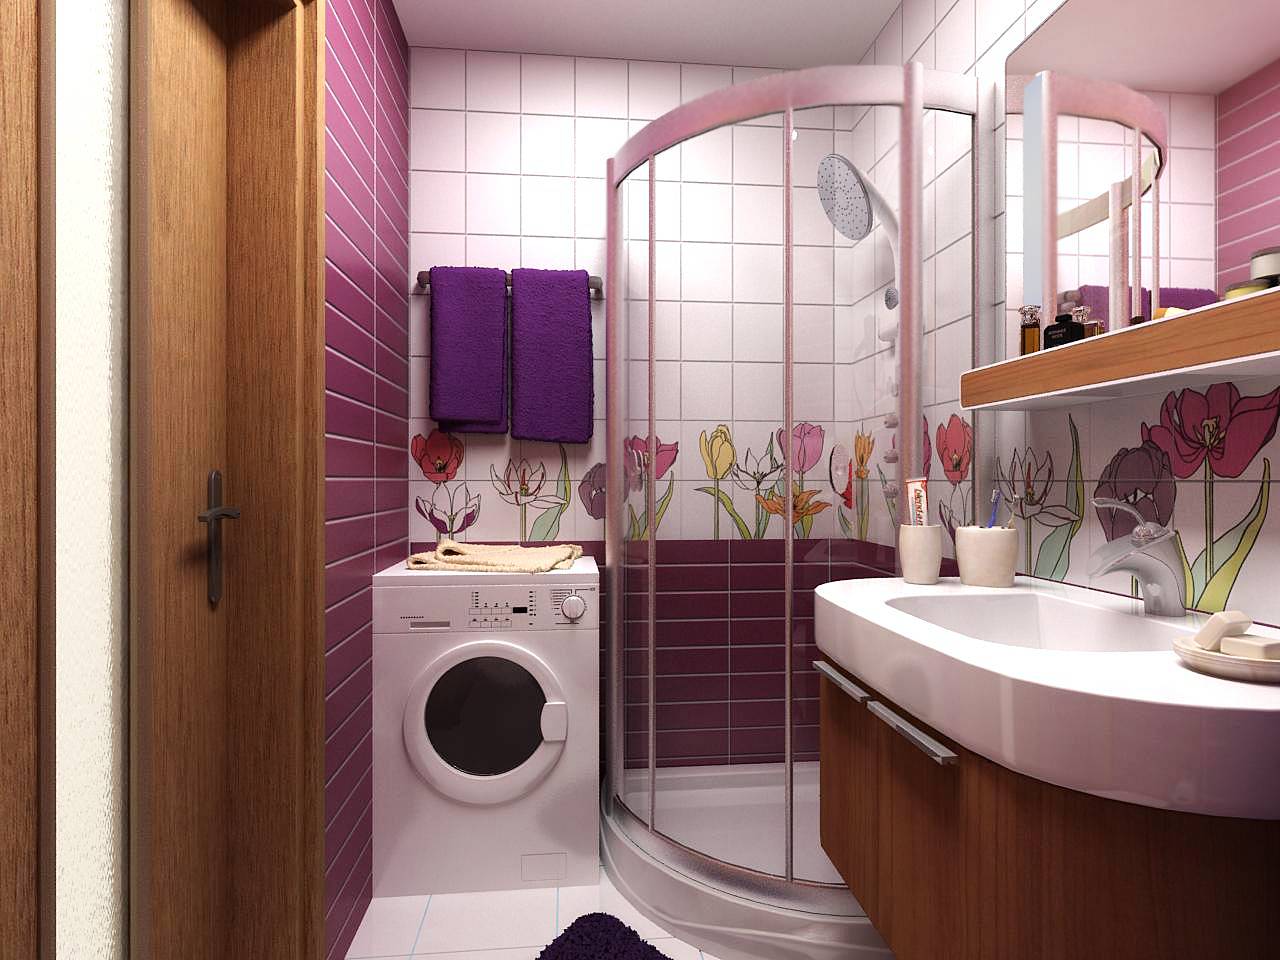 Ванная комната 6 кв. м.: варианты интерьера и практичные идеи оформления небольшой ванной комнаты (видео и 95 фото)